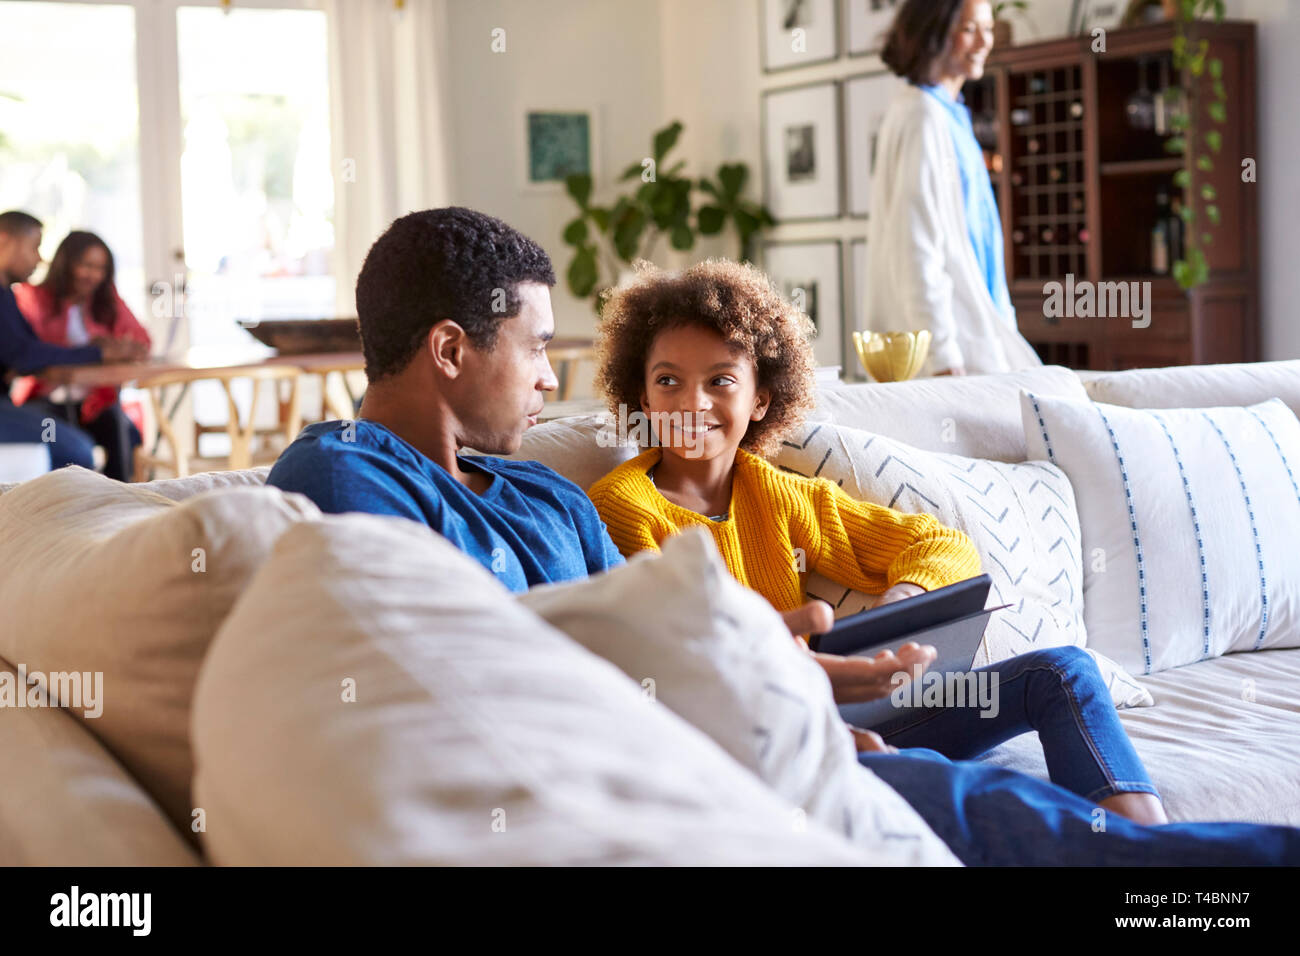 Vater verbringt Zeit mit seiner vor - jugendlich Tochter auf einem Sofa im Wohnzimmer, Mutter zu Fuß durch den Raum, und Großeltern an einem Tisch im Hintergrund sitzen Stockfoto